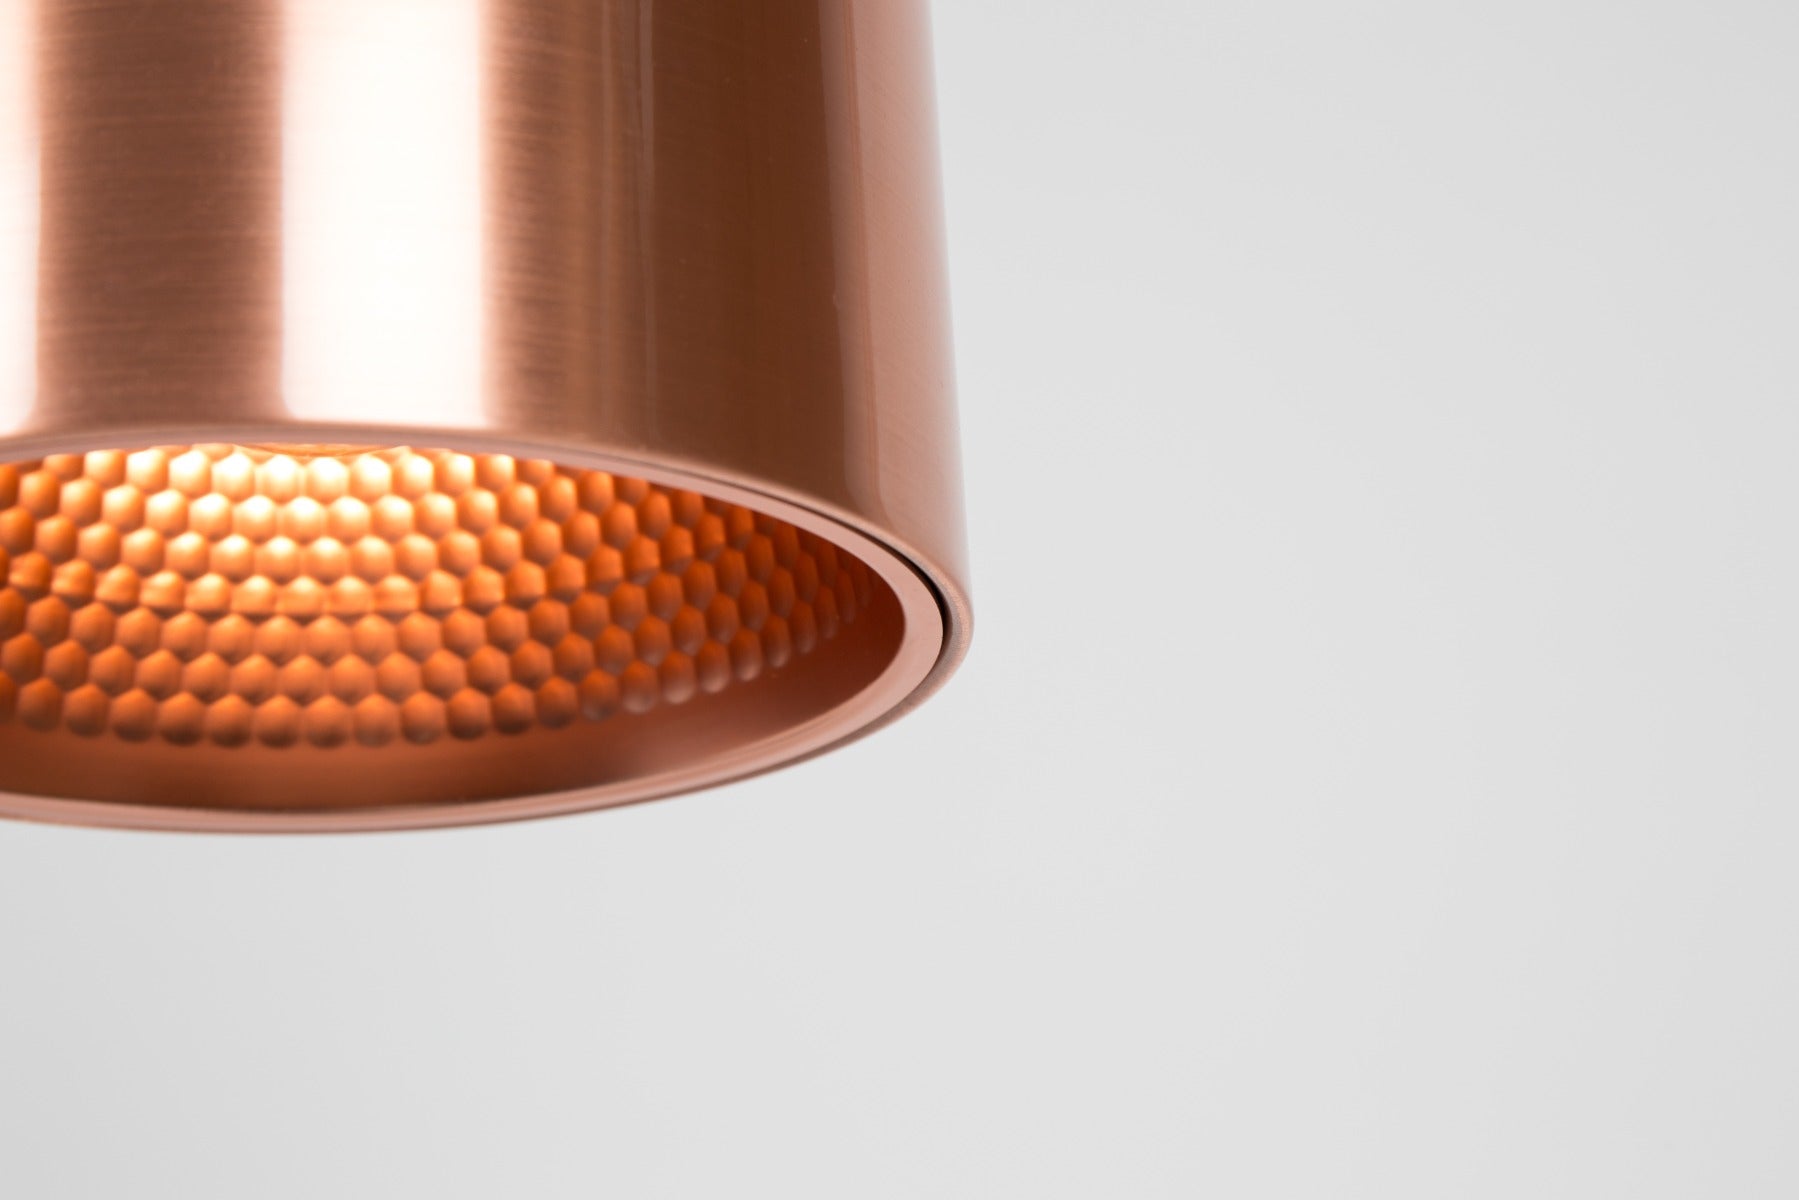 MARVEL copper pendant lamp, Zuiver, Eye on Design